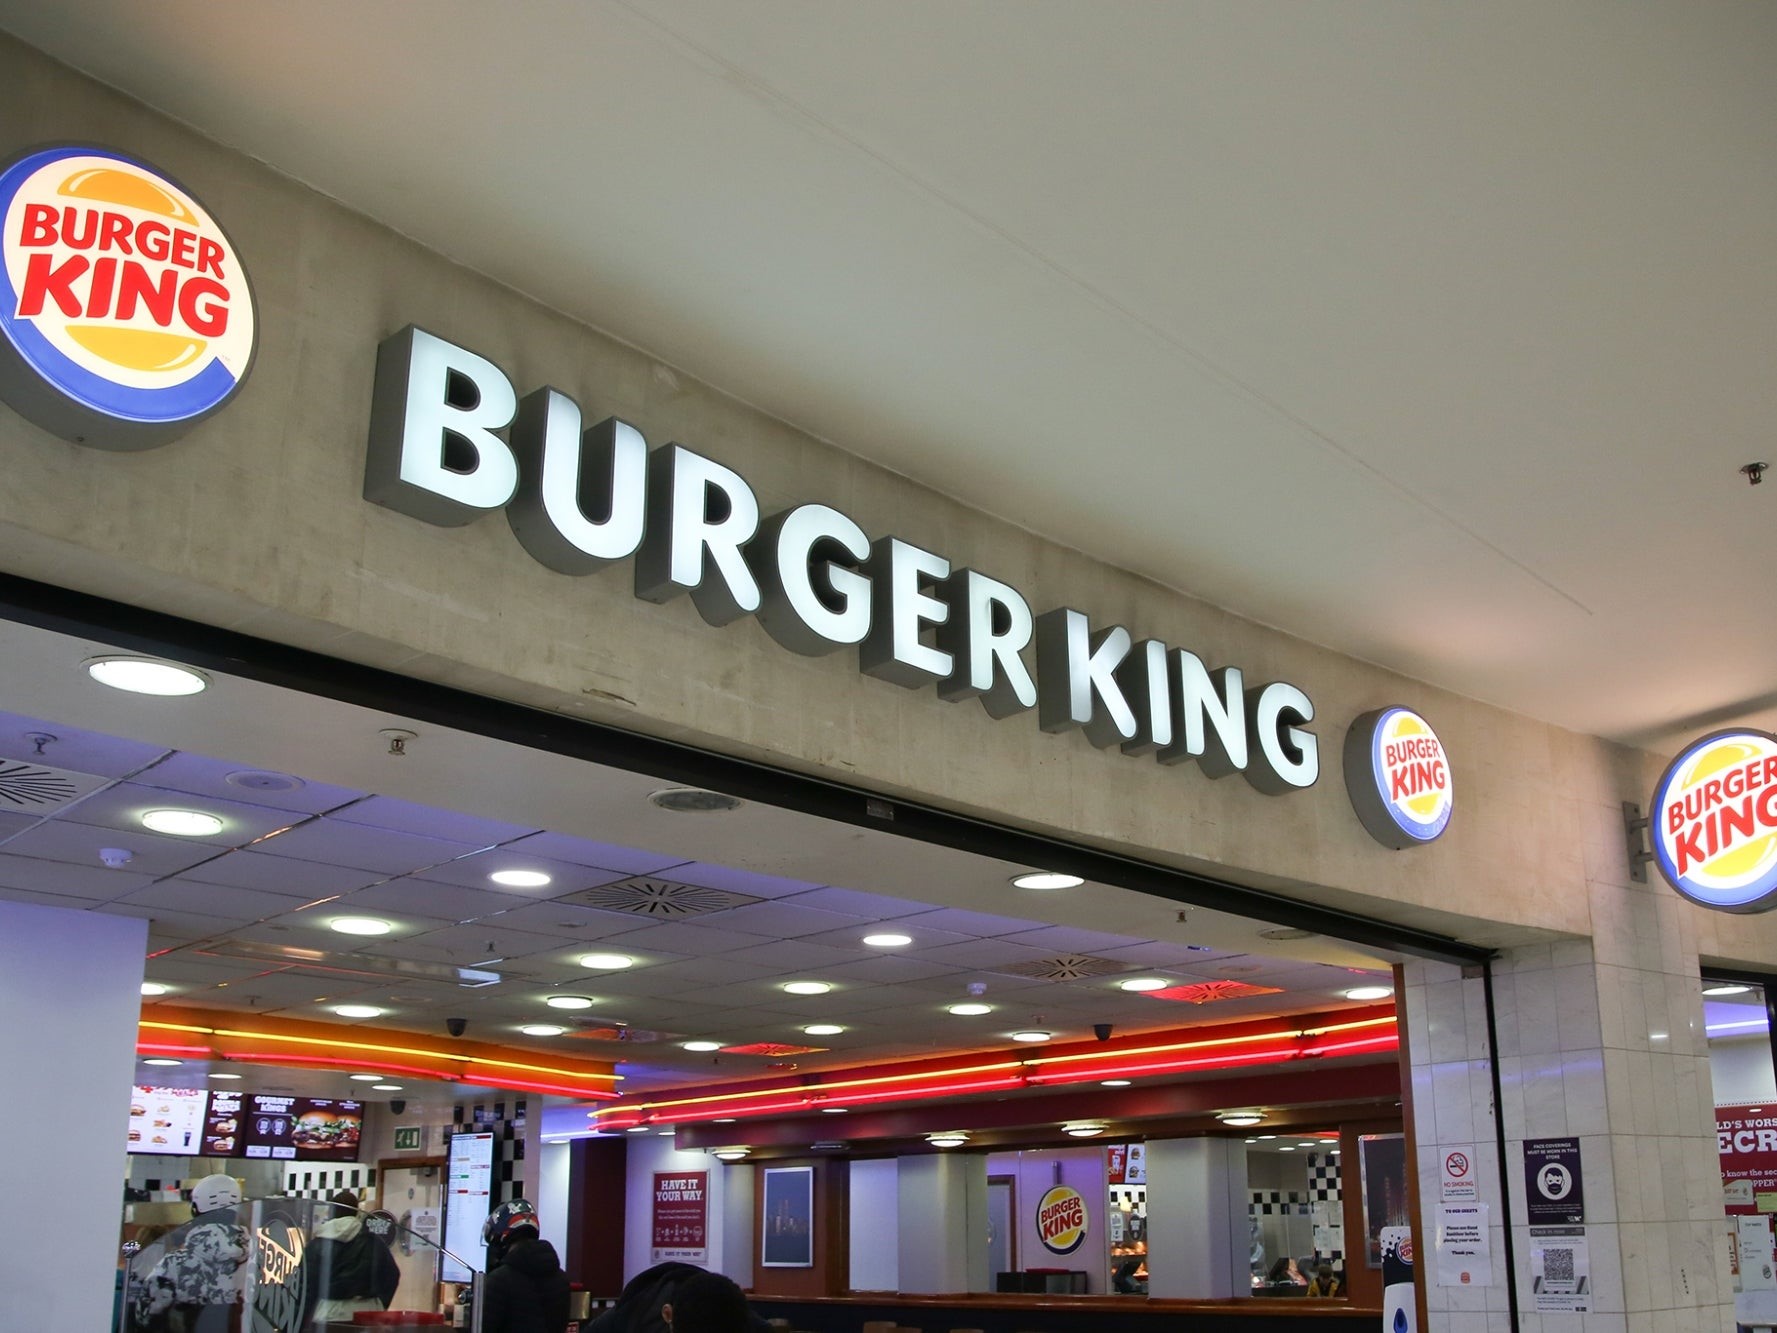 Burger King menu/ thực đơn 